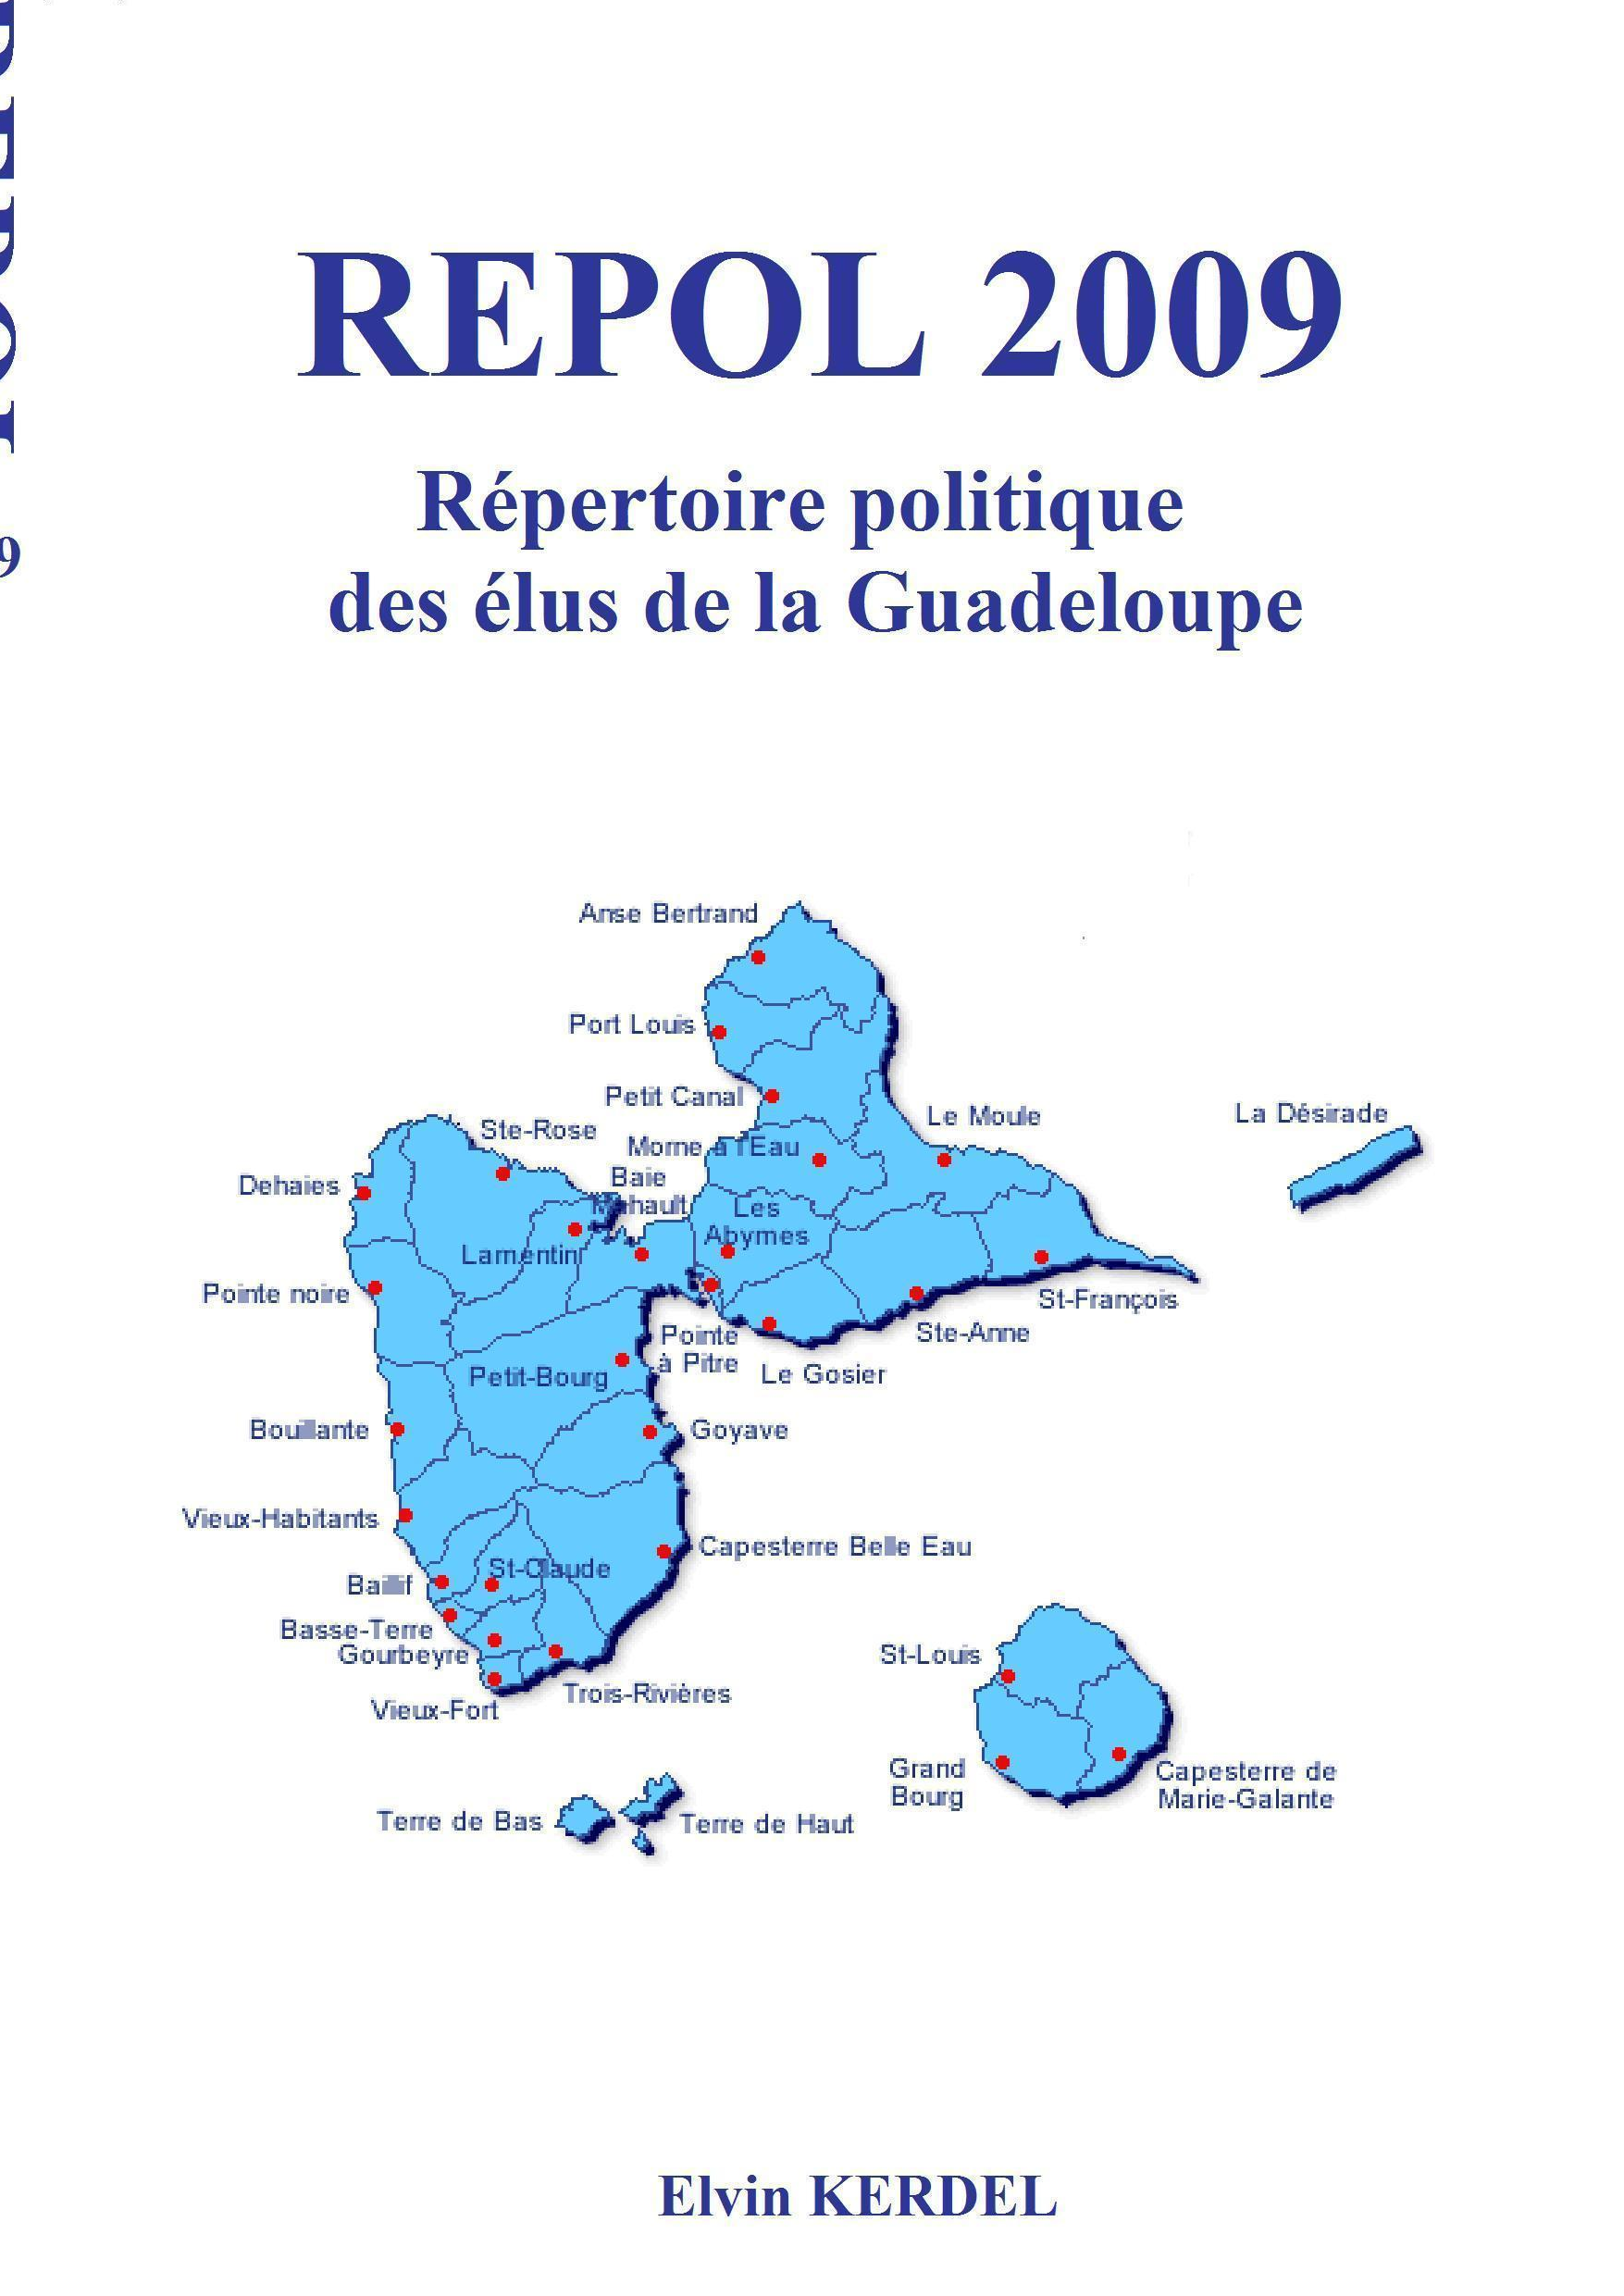 REPOL 2009 Guadeloupe